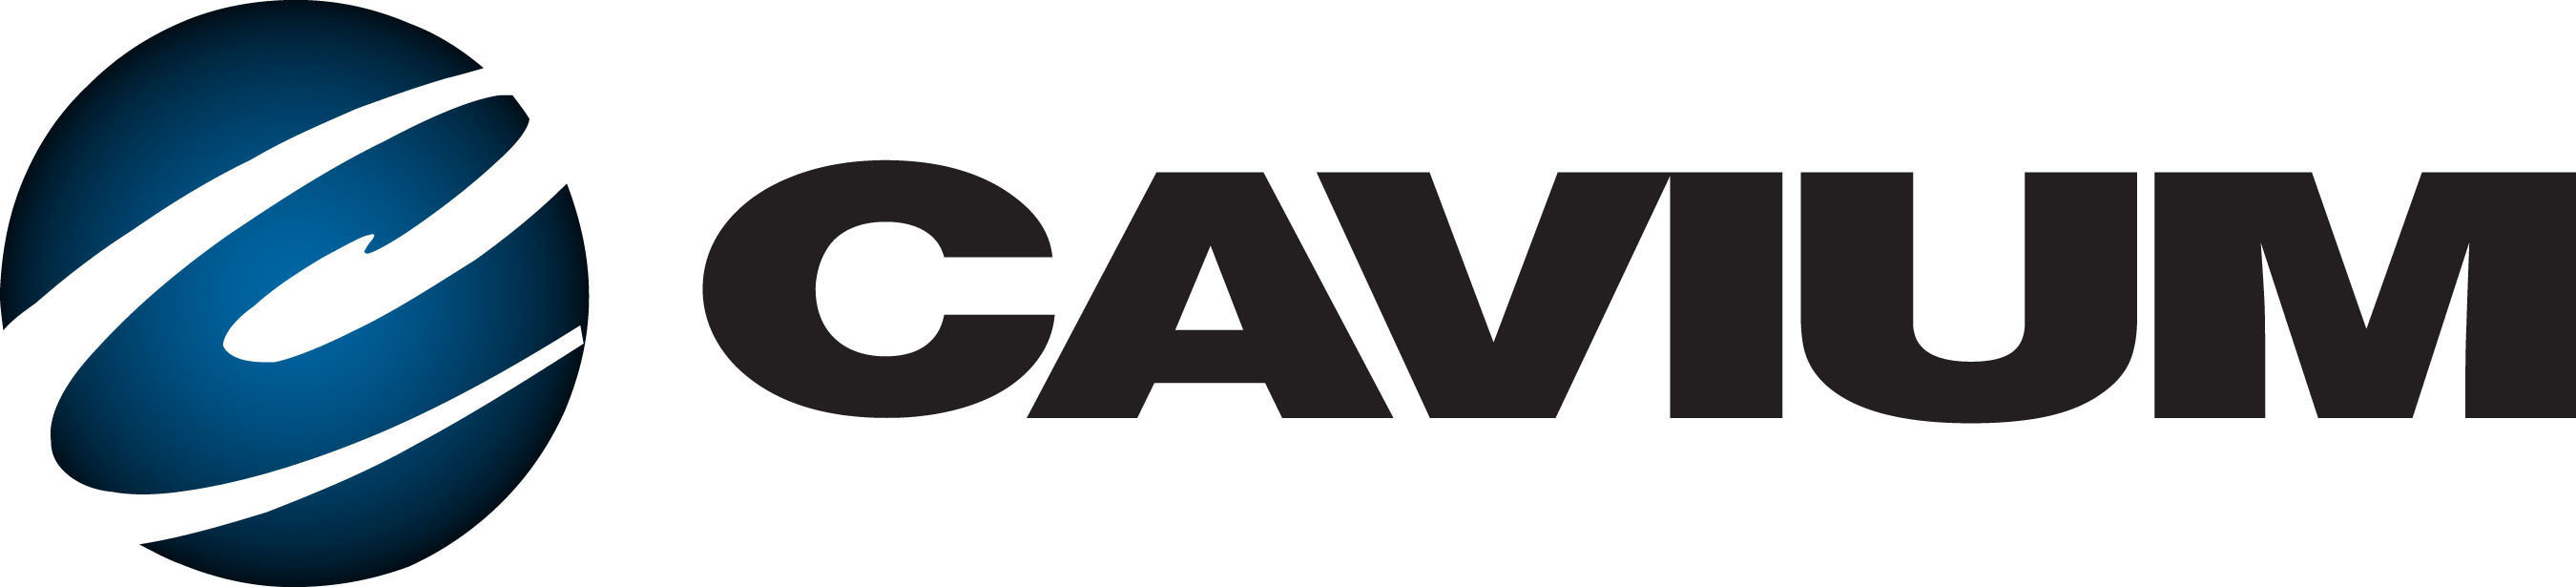 Cavium, Inc. Logo. (PRNewsFoto/Cavium Networks) (PRNewsFoto/)